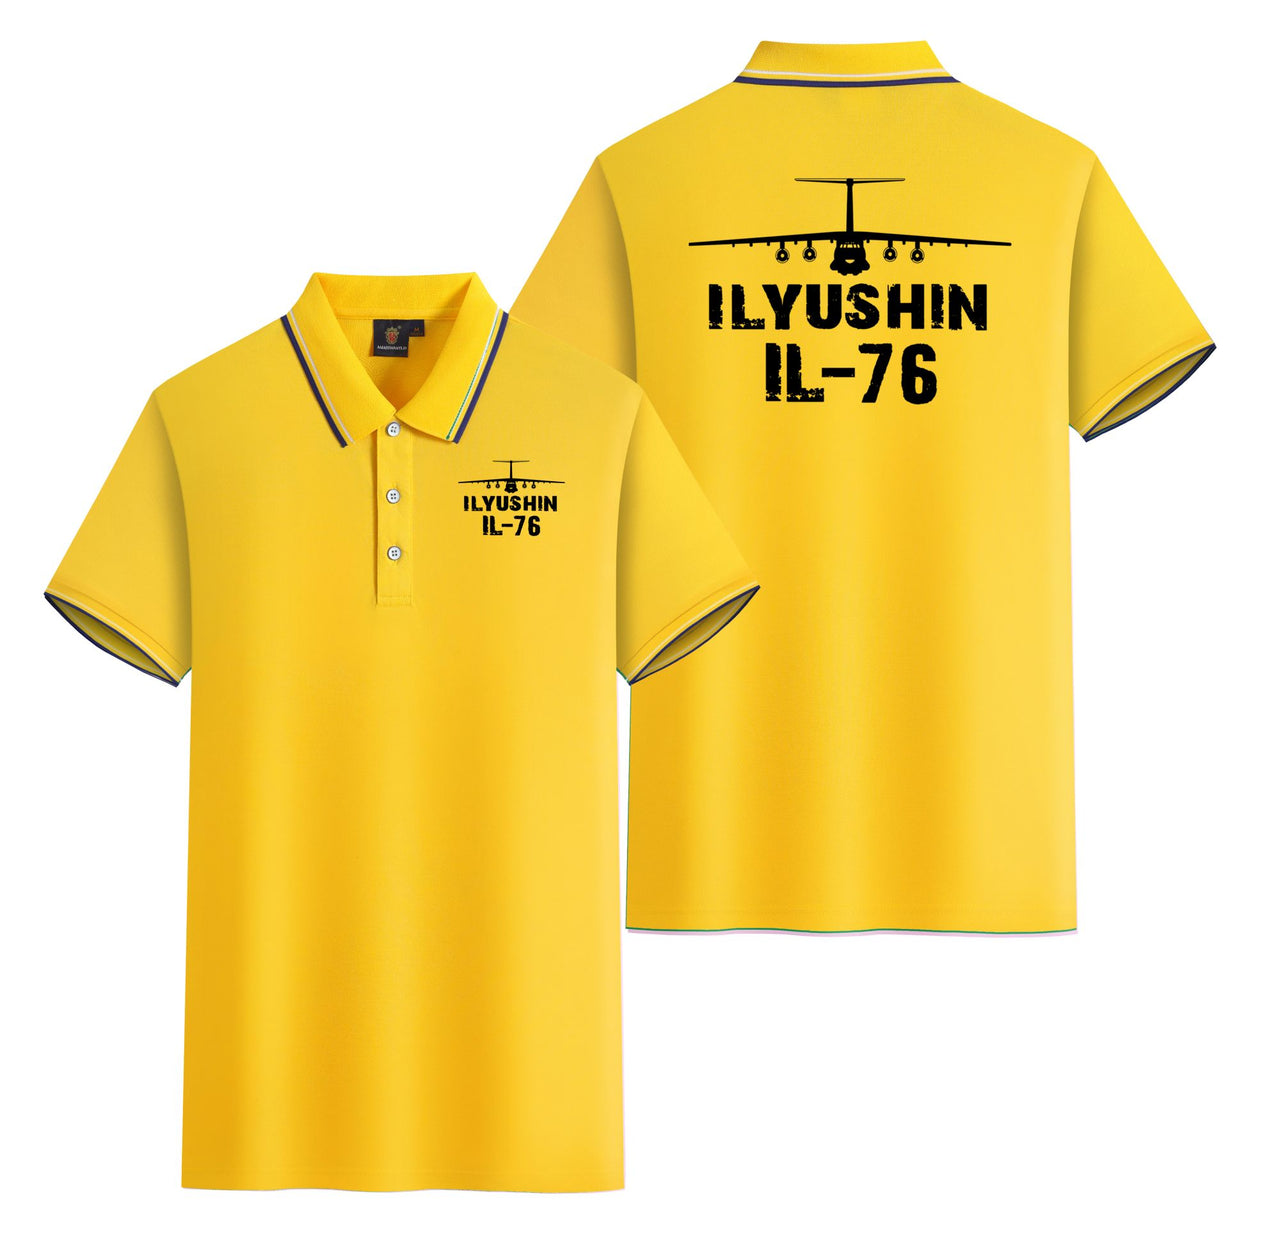 ILyushin IL-76 & Plane Designed Stylish Polo T-Shirts (Double-Side)